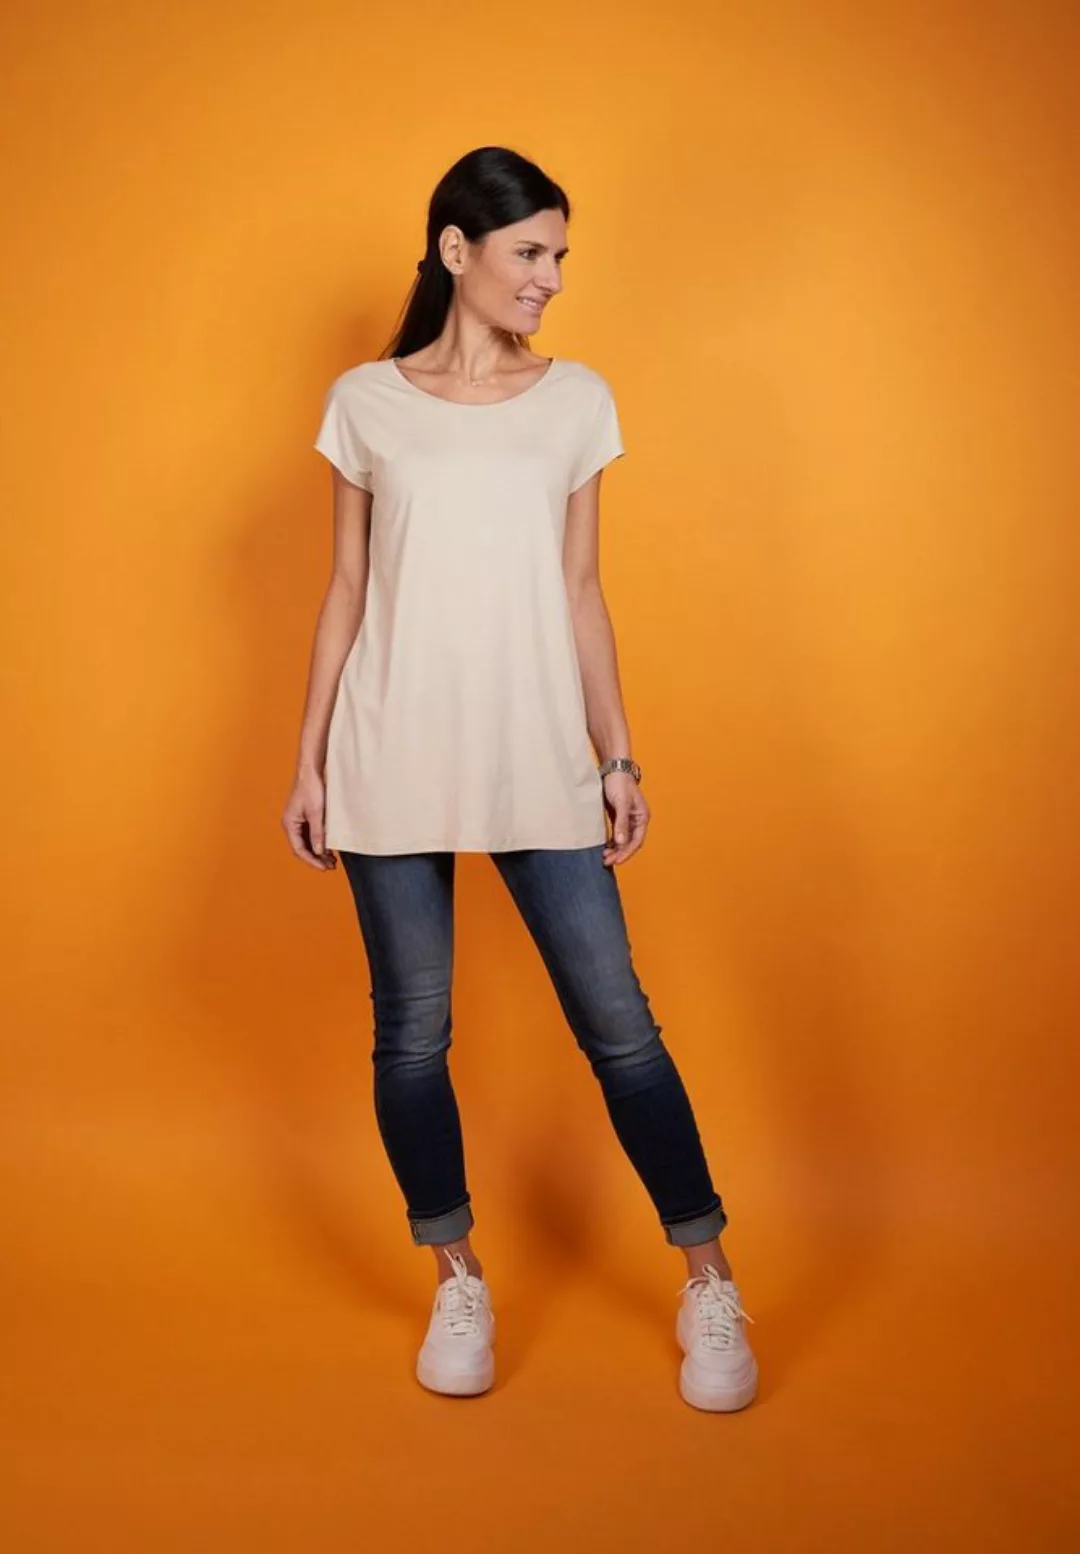 Seidel Moden Longshirt in schlichtem Design, MADE IN GERMANY günstig online kaufen